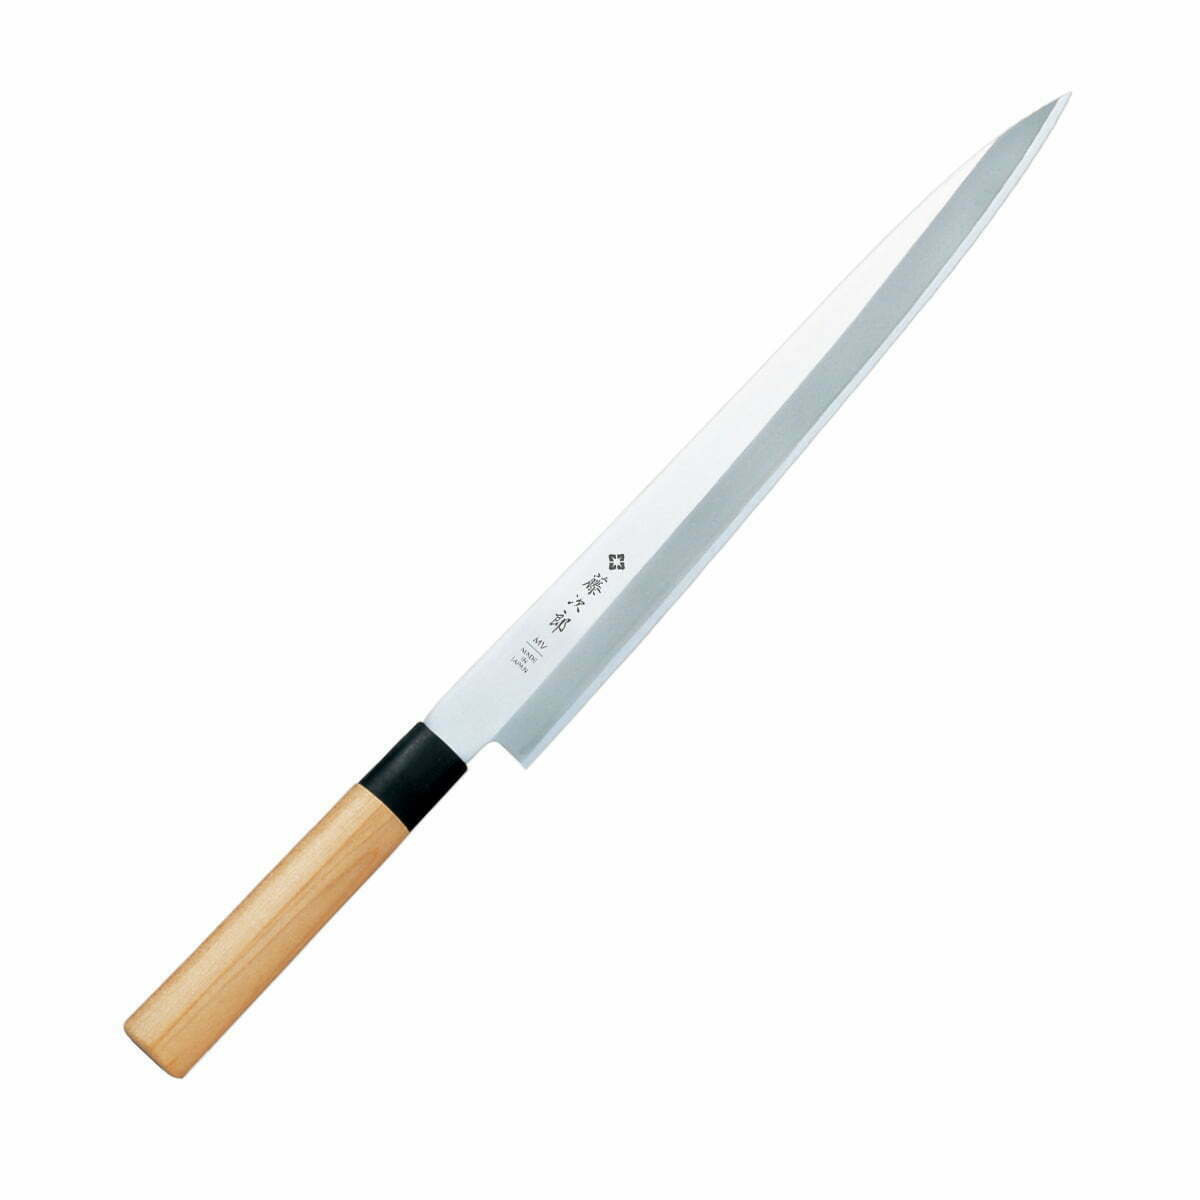 סכין חיתוך פילה דגים יָאנָאגִיבָּה 300מ״מ פלדת אל-חלד יפנית מוליבדנום ונדיום גימור מט מלוטש טוג׳ירו יפן SKTOJIF-105911